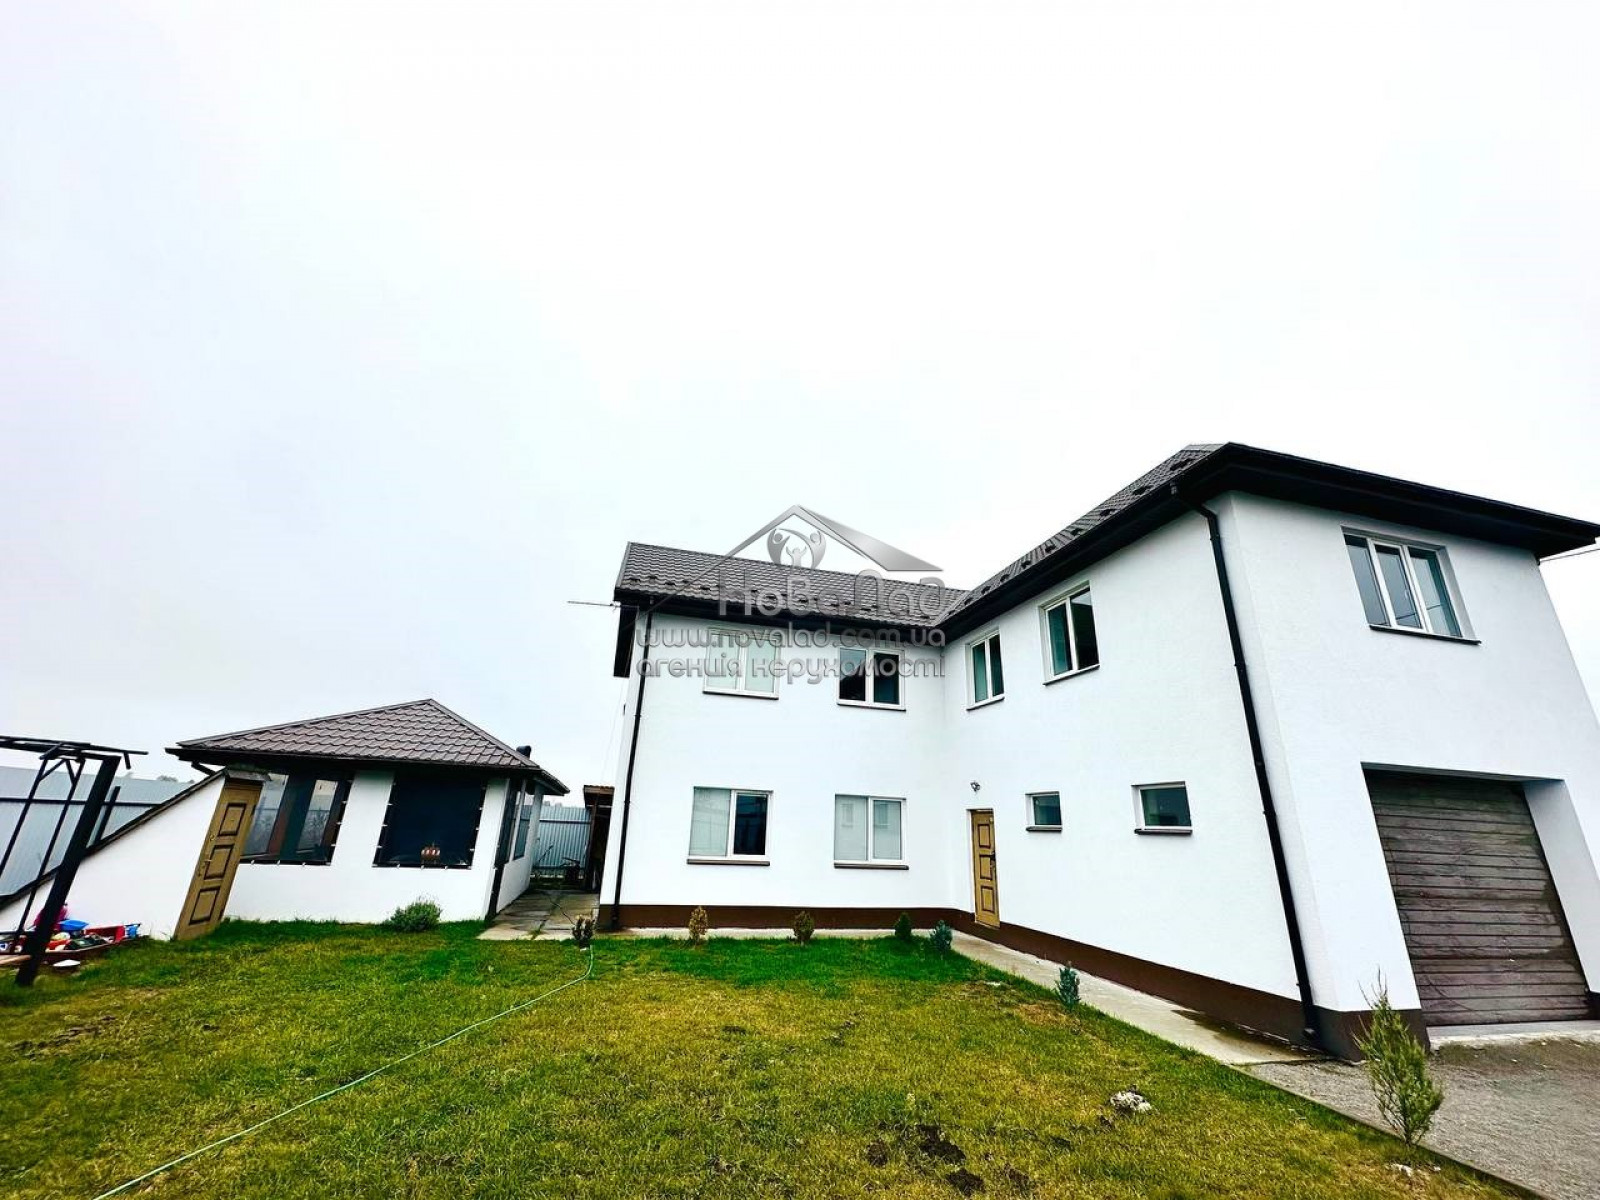 Будинок для проживання або відпочинку біля р.Десна, 220 м2